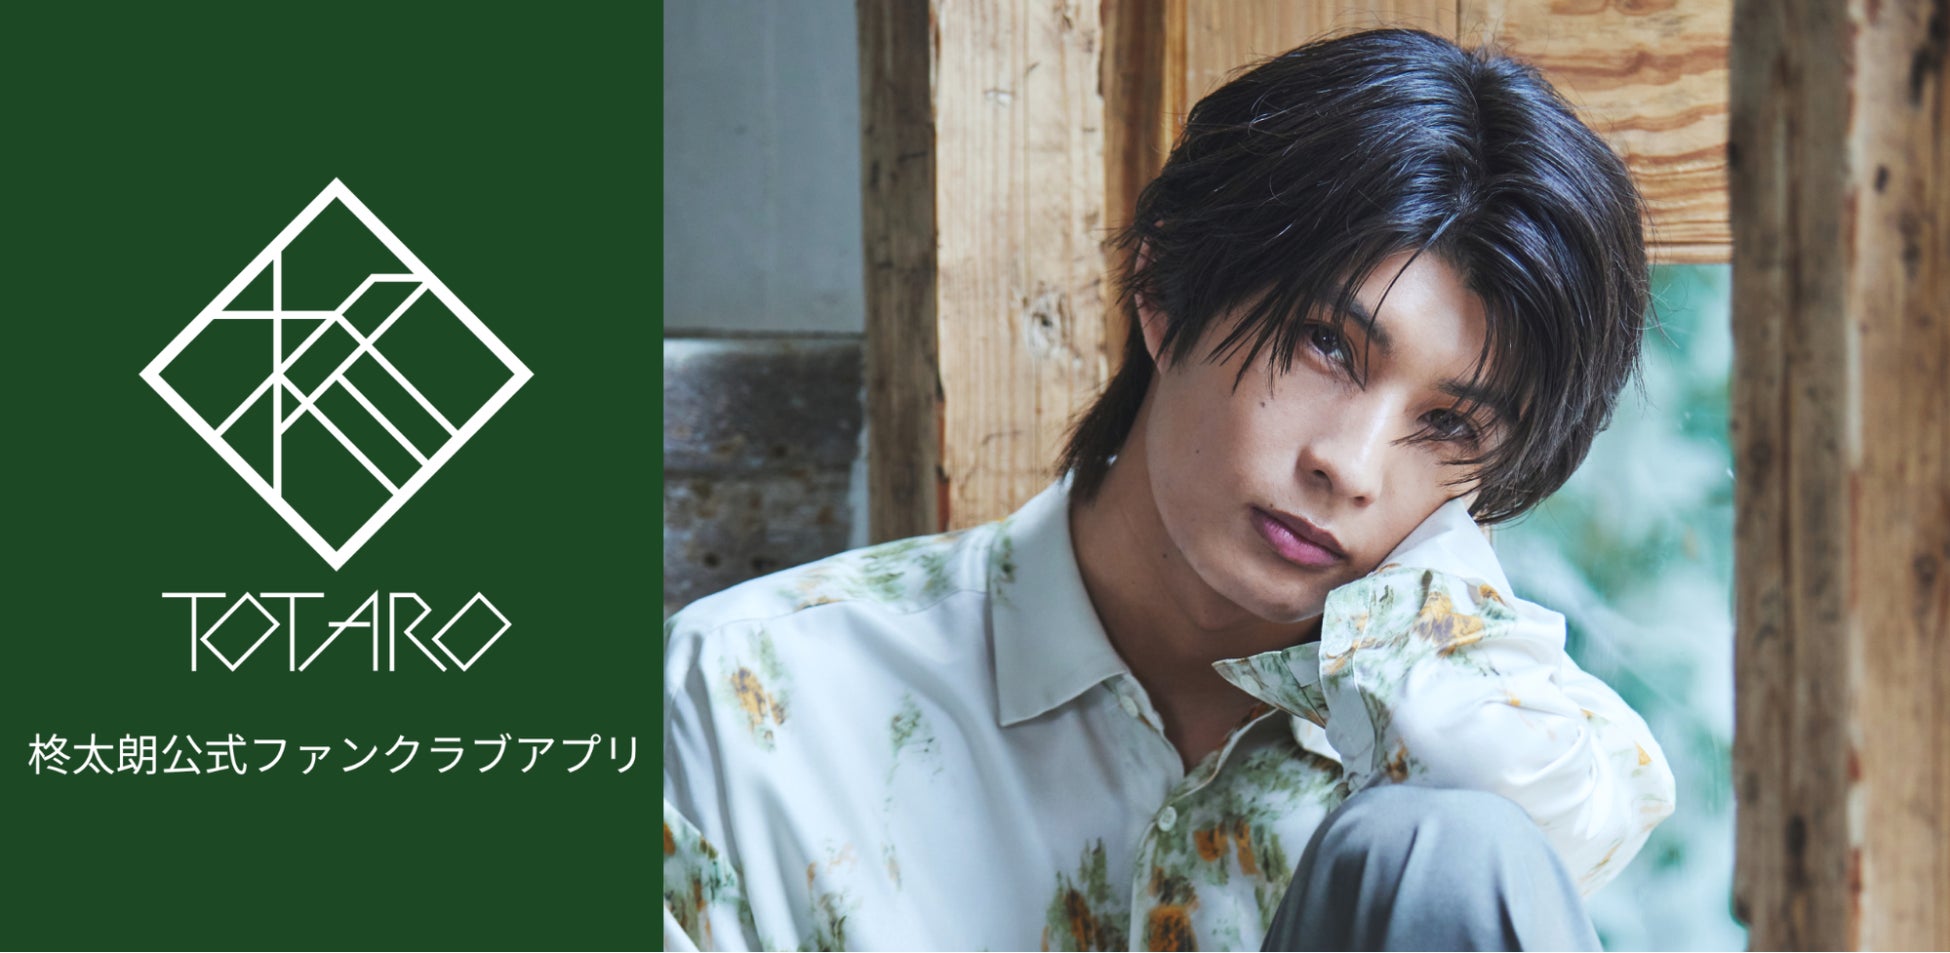 俳優 柊太朗、公式アプリリリースのお知らせ